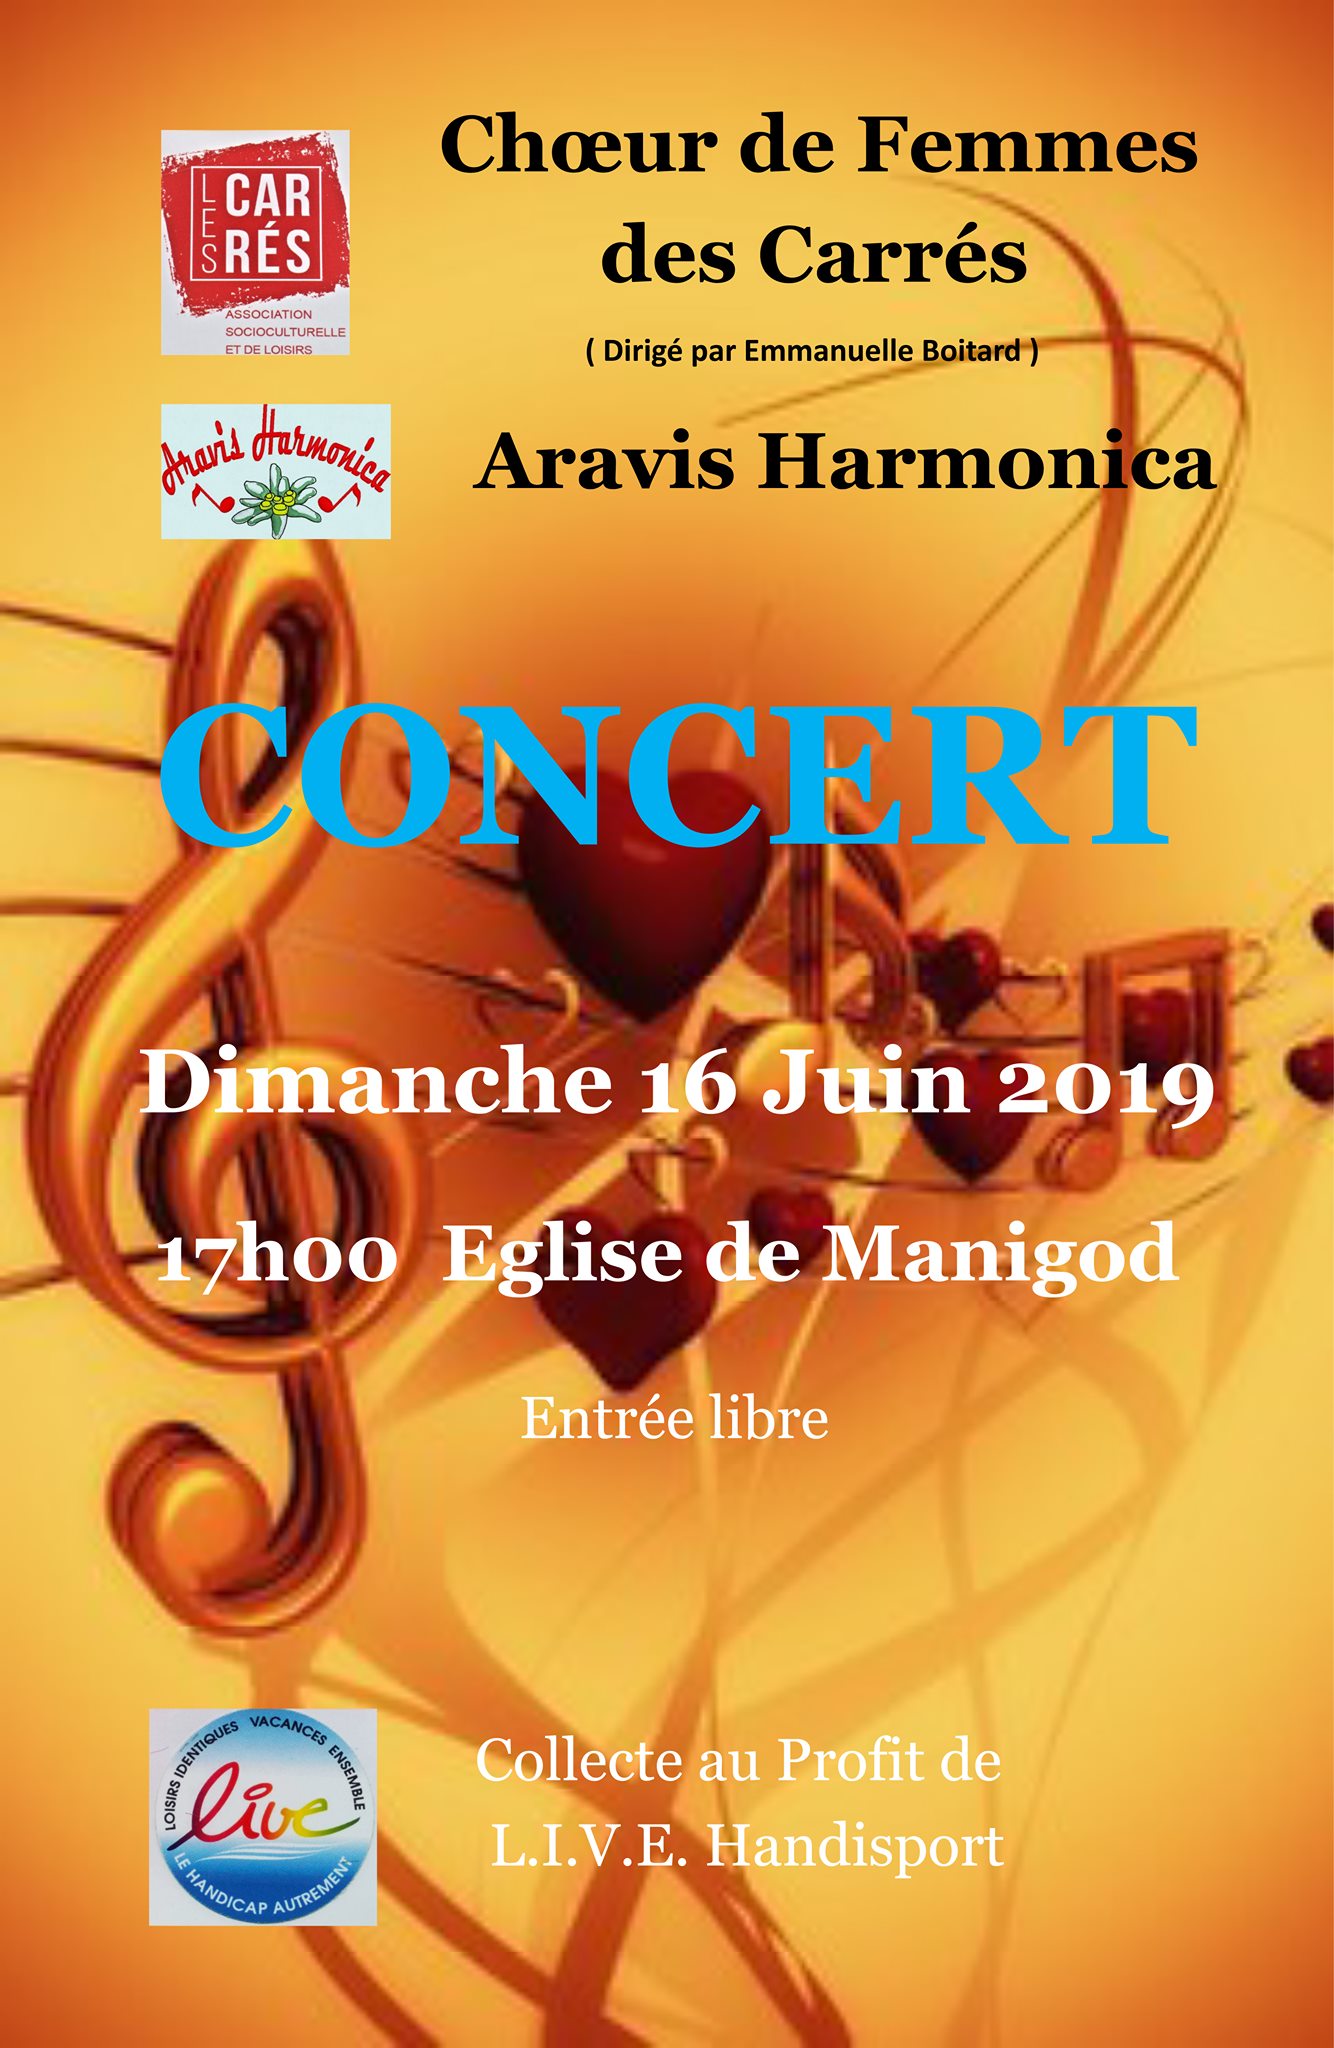 Affiche concert Manigod